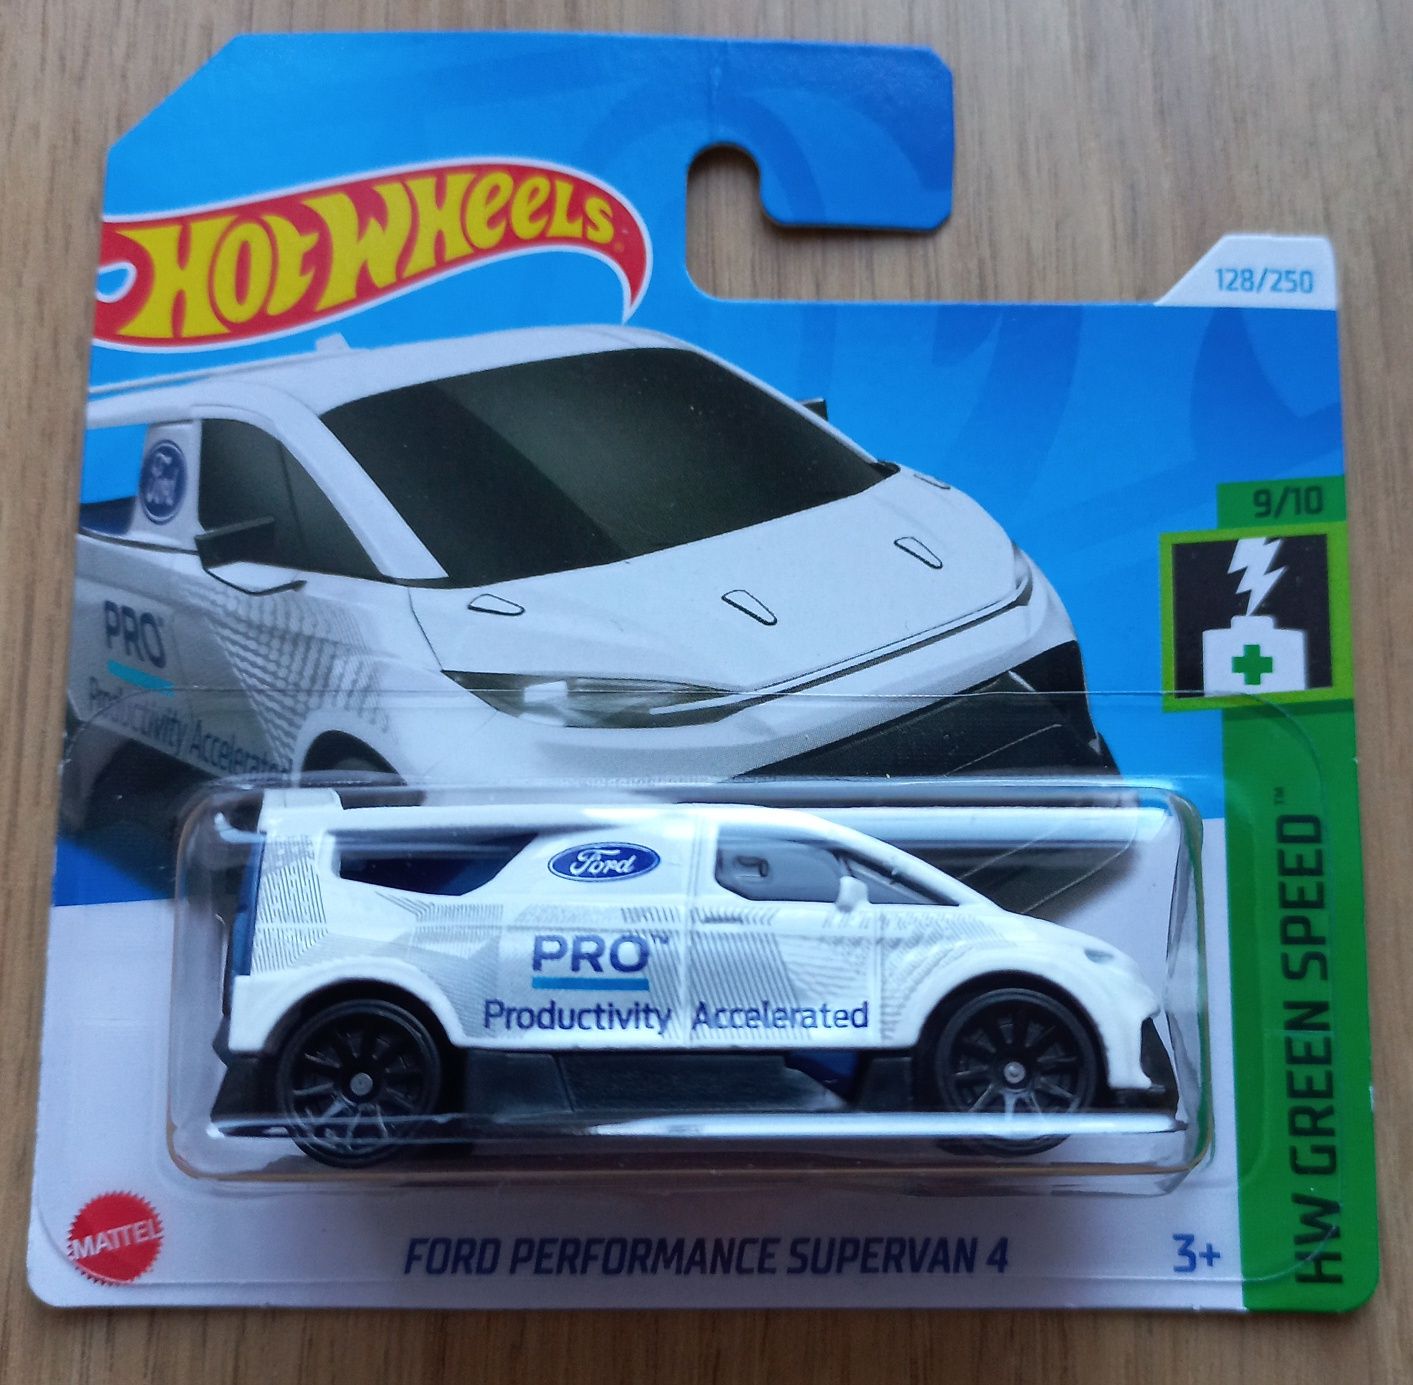 Ford Performance Supervan 4 Hot Wheels nowy fabrycznie zapakowany.